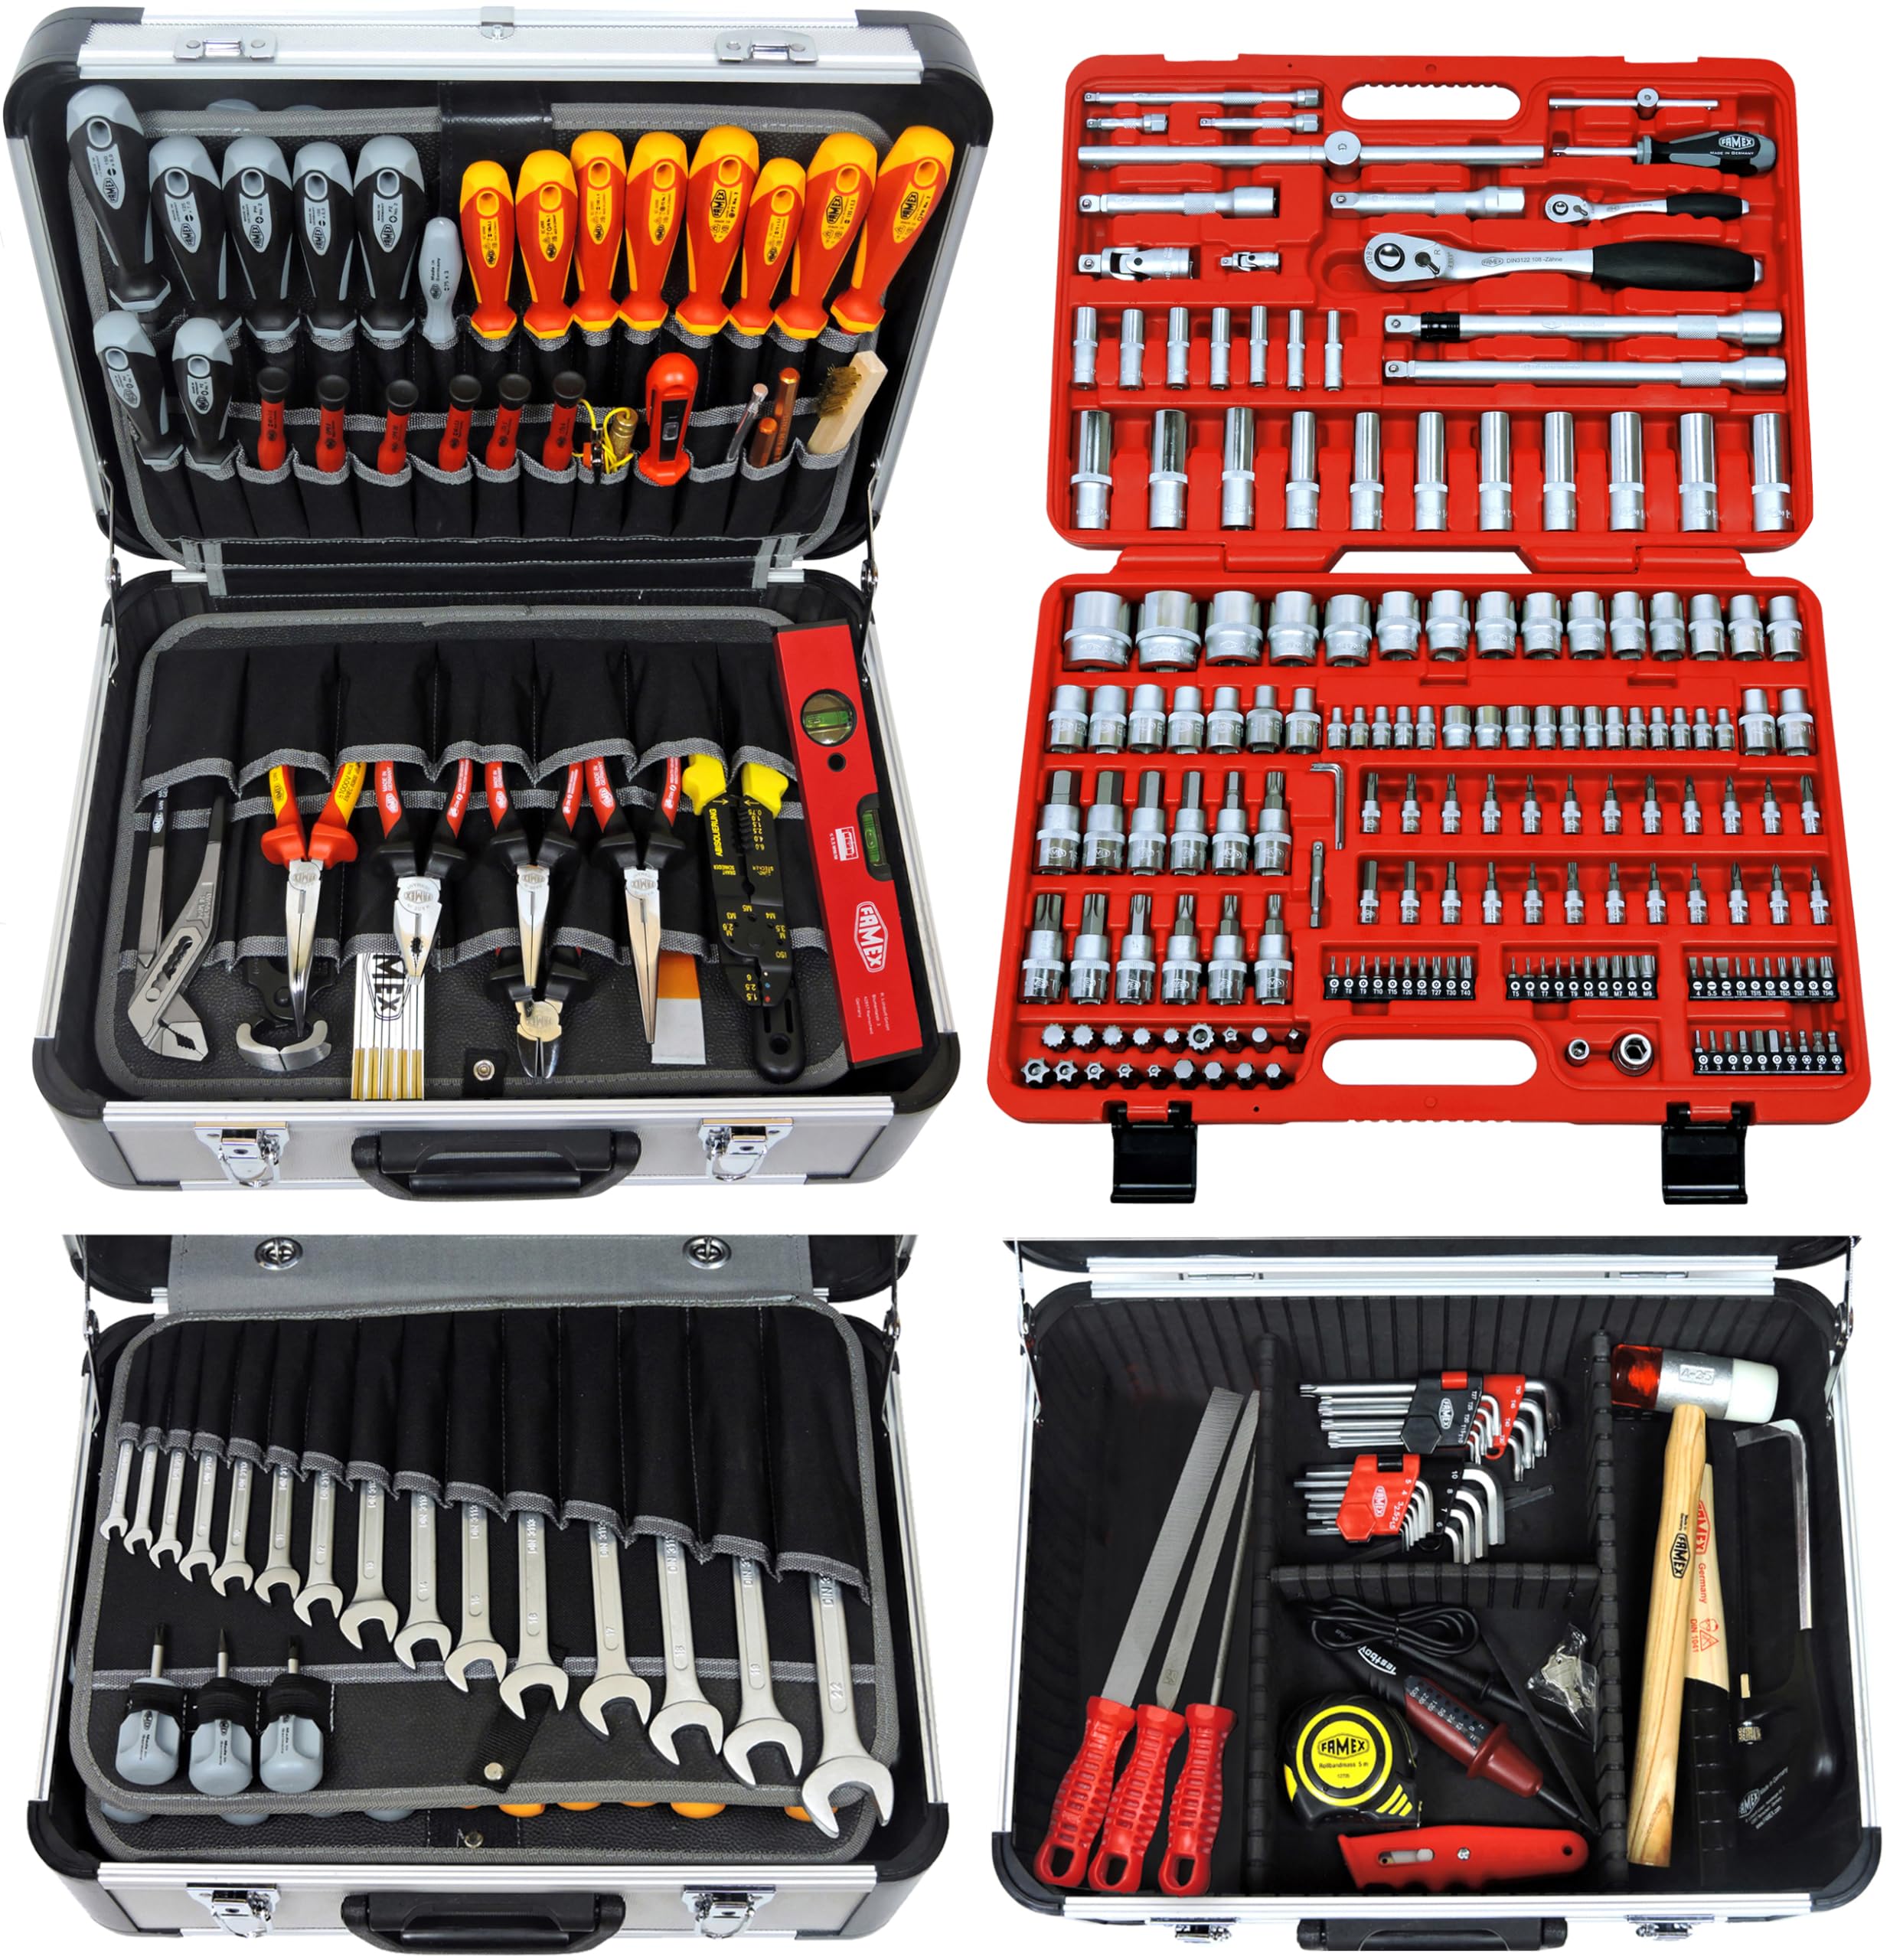 FAMEX 414-18 Profi Alu Werkzeugkoffer mit Werkzeug Set und Steckschlüsselsatz in High-End-Qualität - Werkzeug aus deutscher Produktion